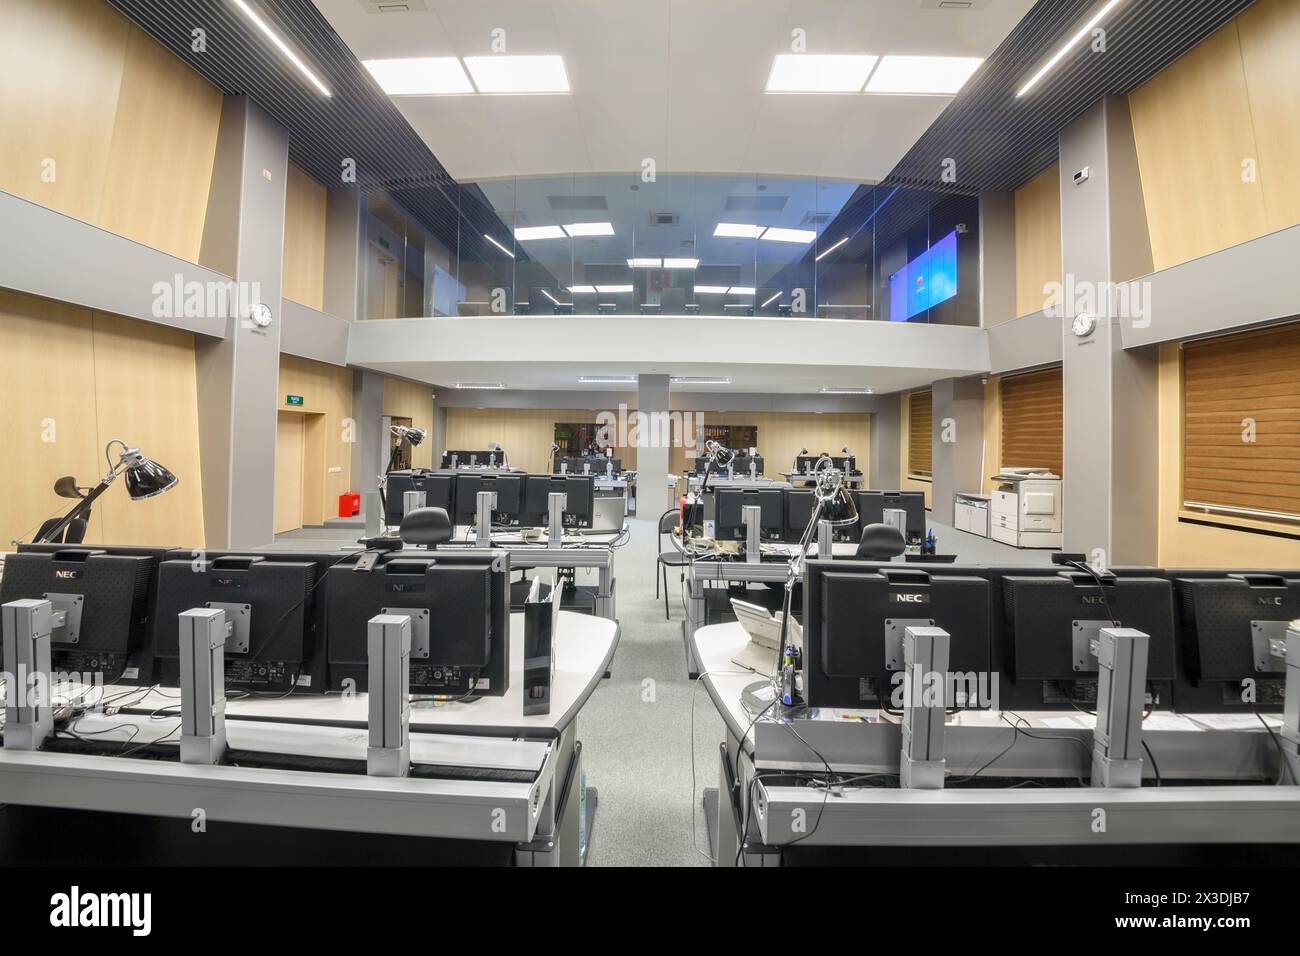 MOSKAU, RUSSLAND - 04. Februar 2016: Innenraum des Zentrums TSODD, Überwachung und Betriebsmanagement des Personenverkehrs Stockfoto